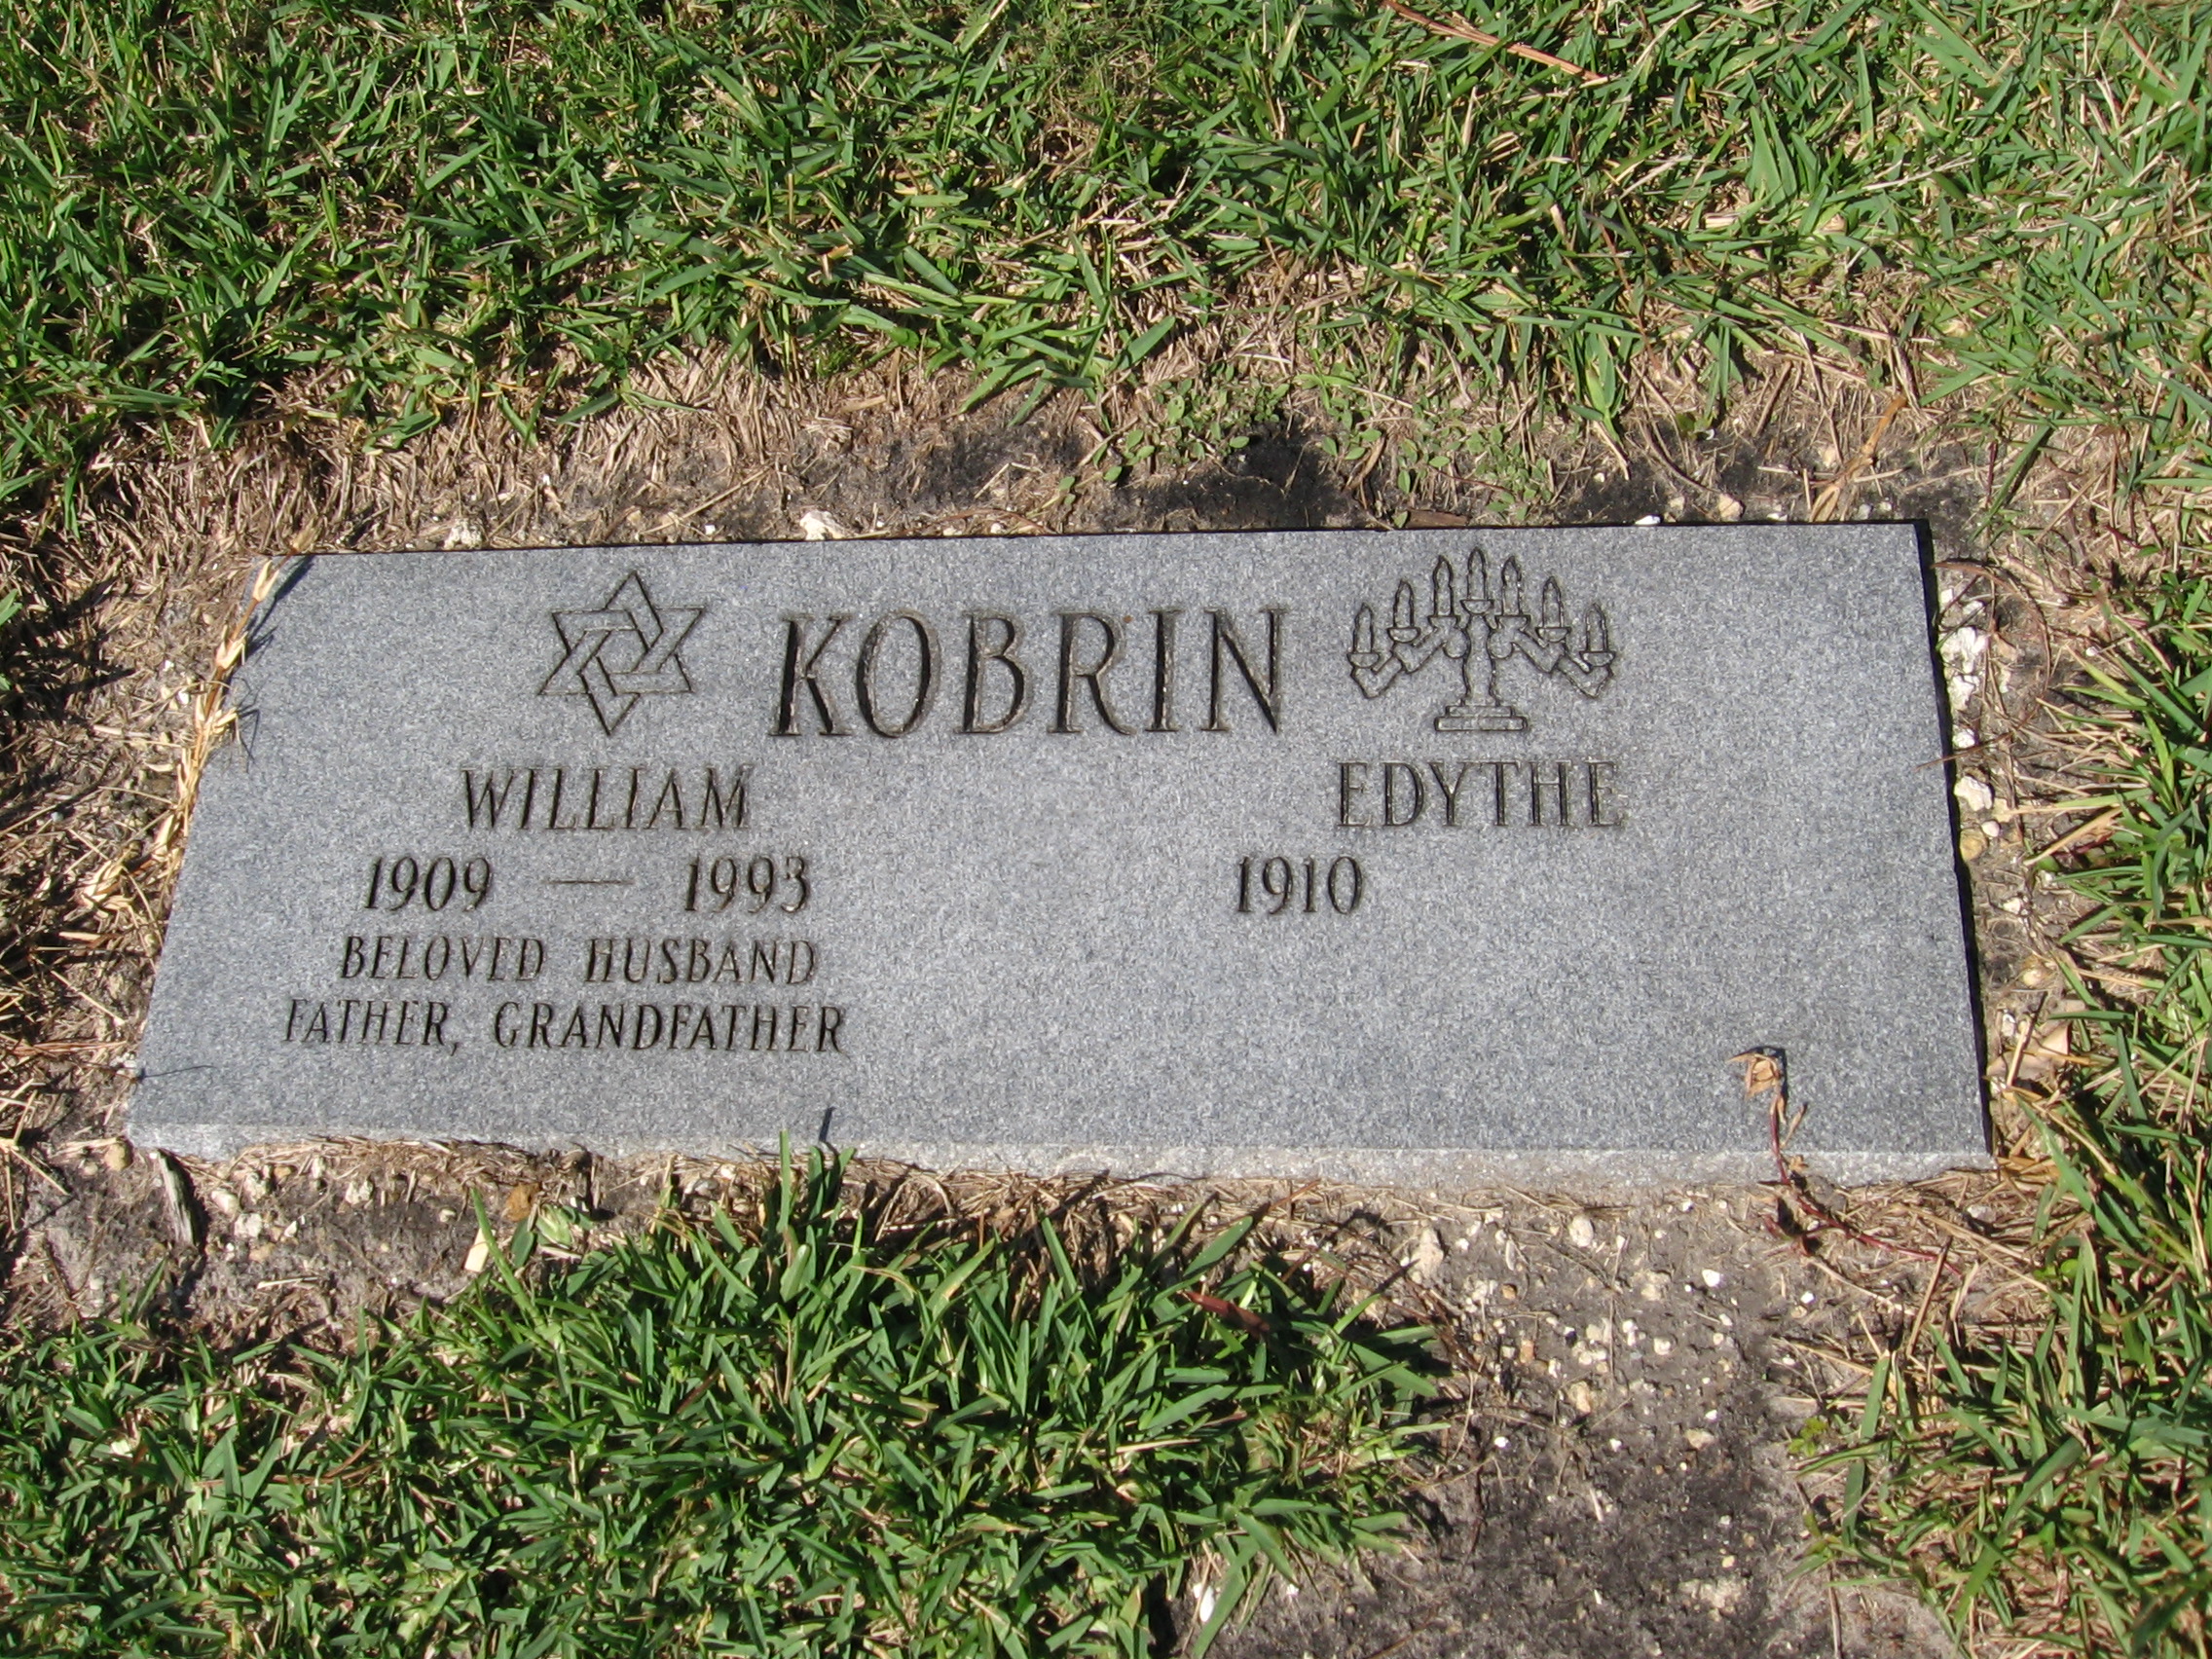 Edythe Kobrin